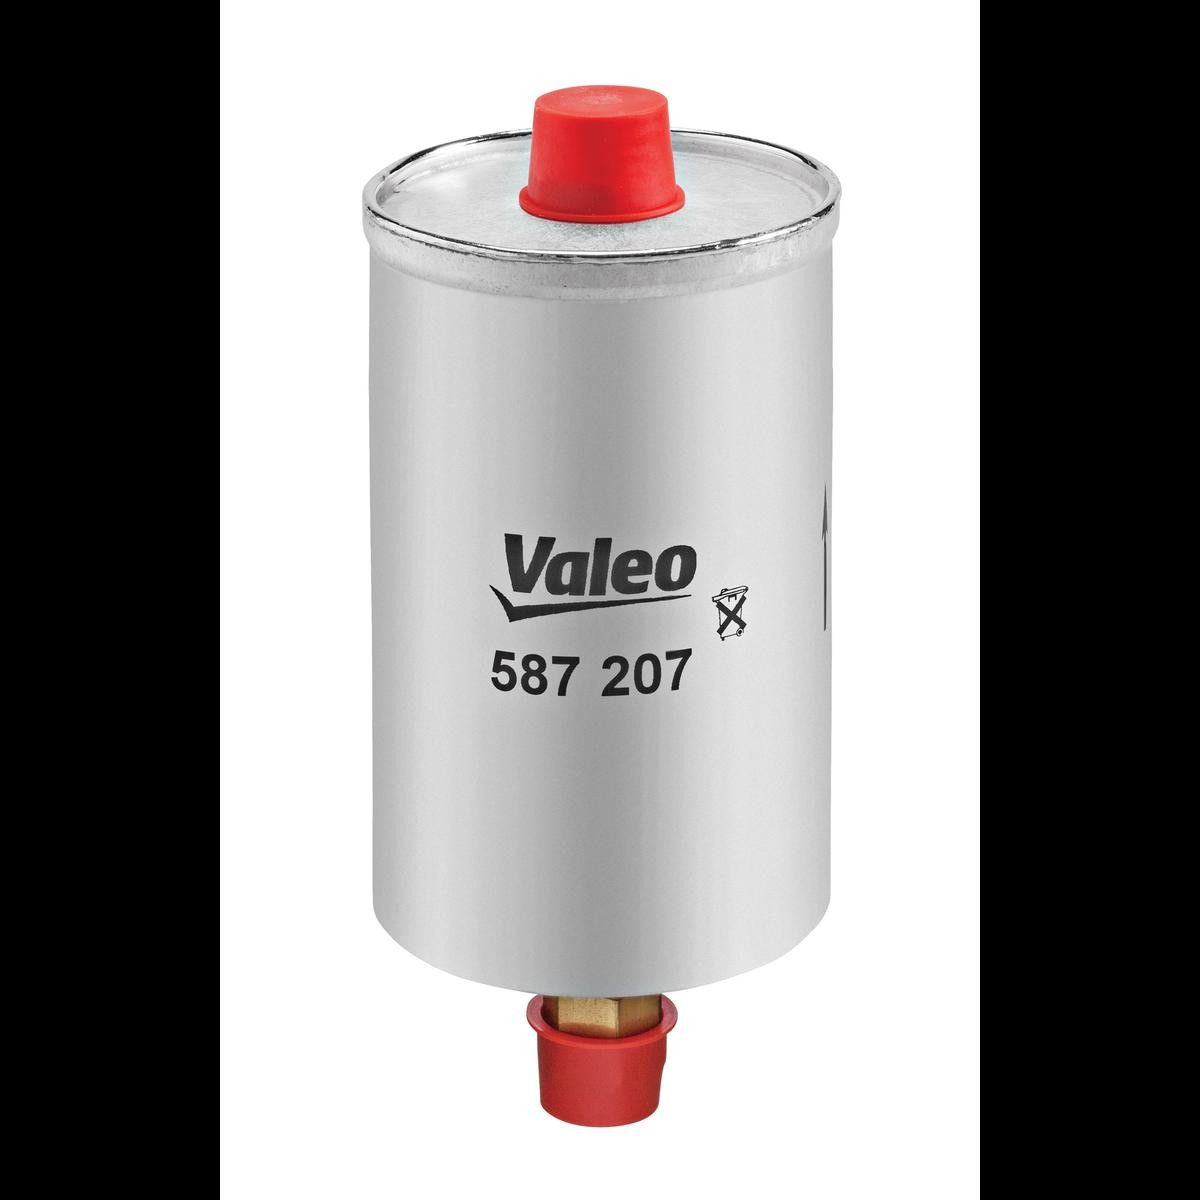 VALEO 587207 Fuel filter AK 11 LS